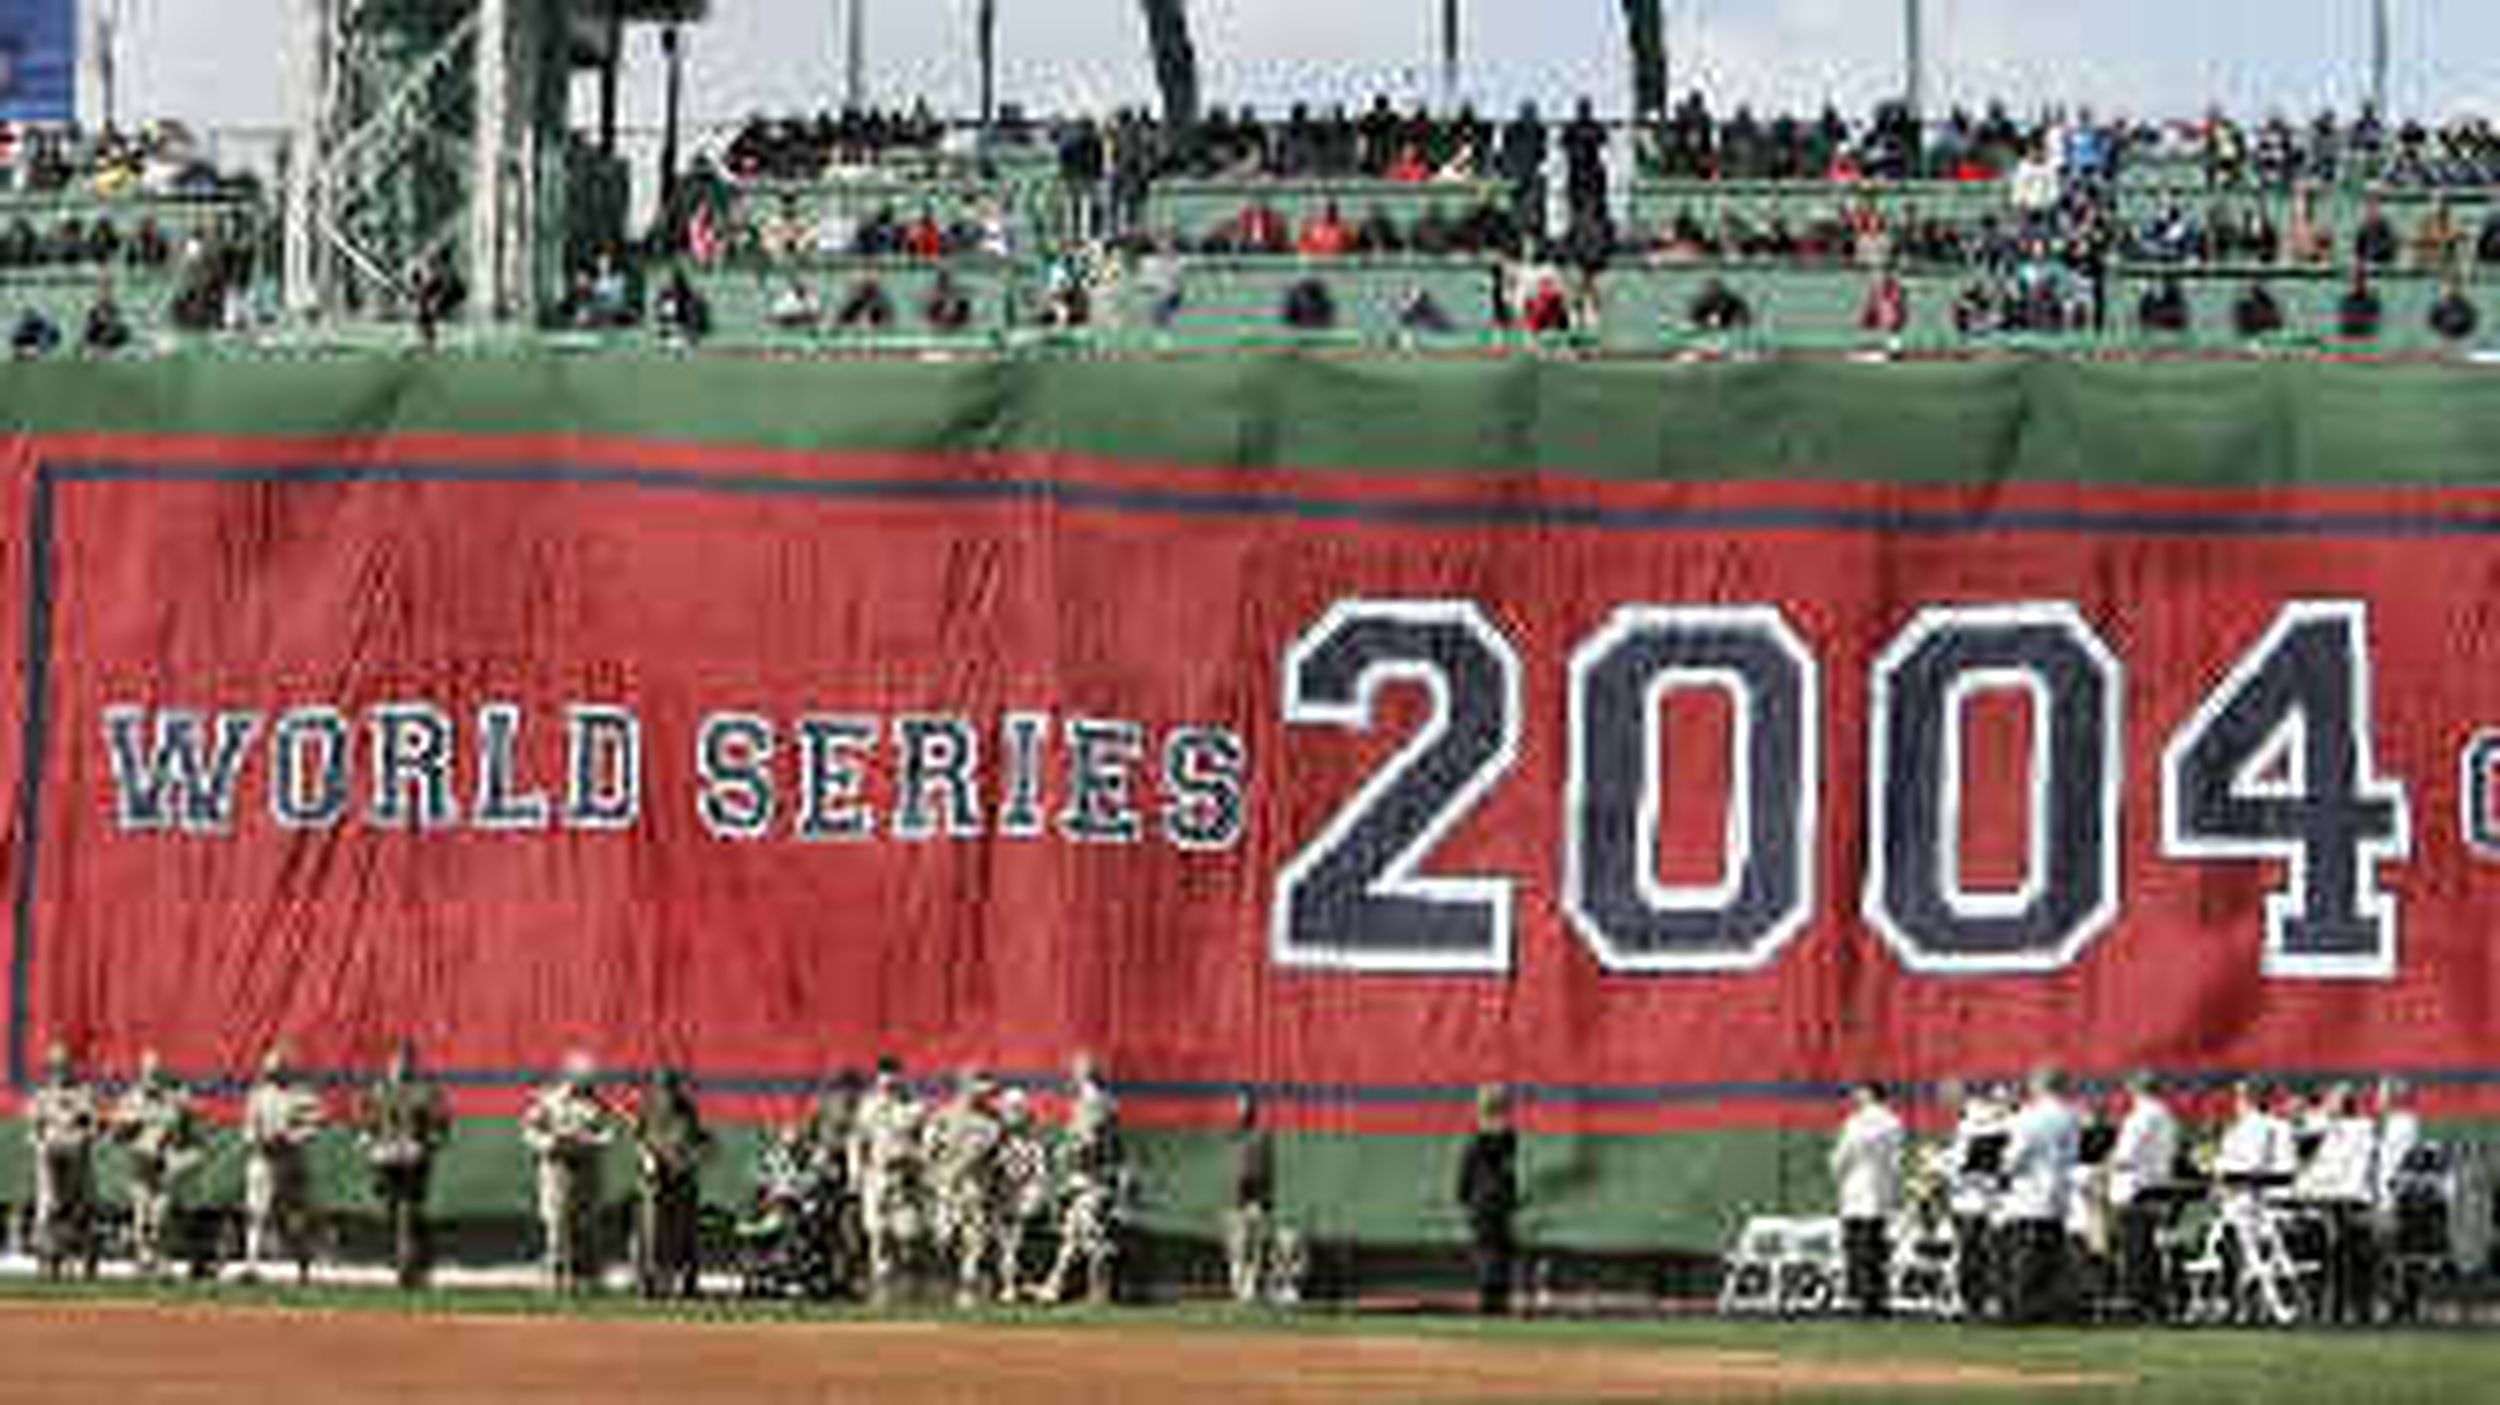 Derek Lowe Jersey - 2004 Boston Red Sox 2004 Away Throwback